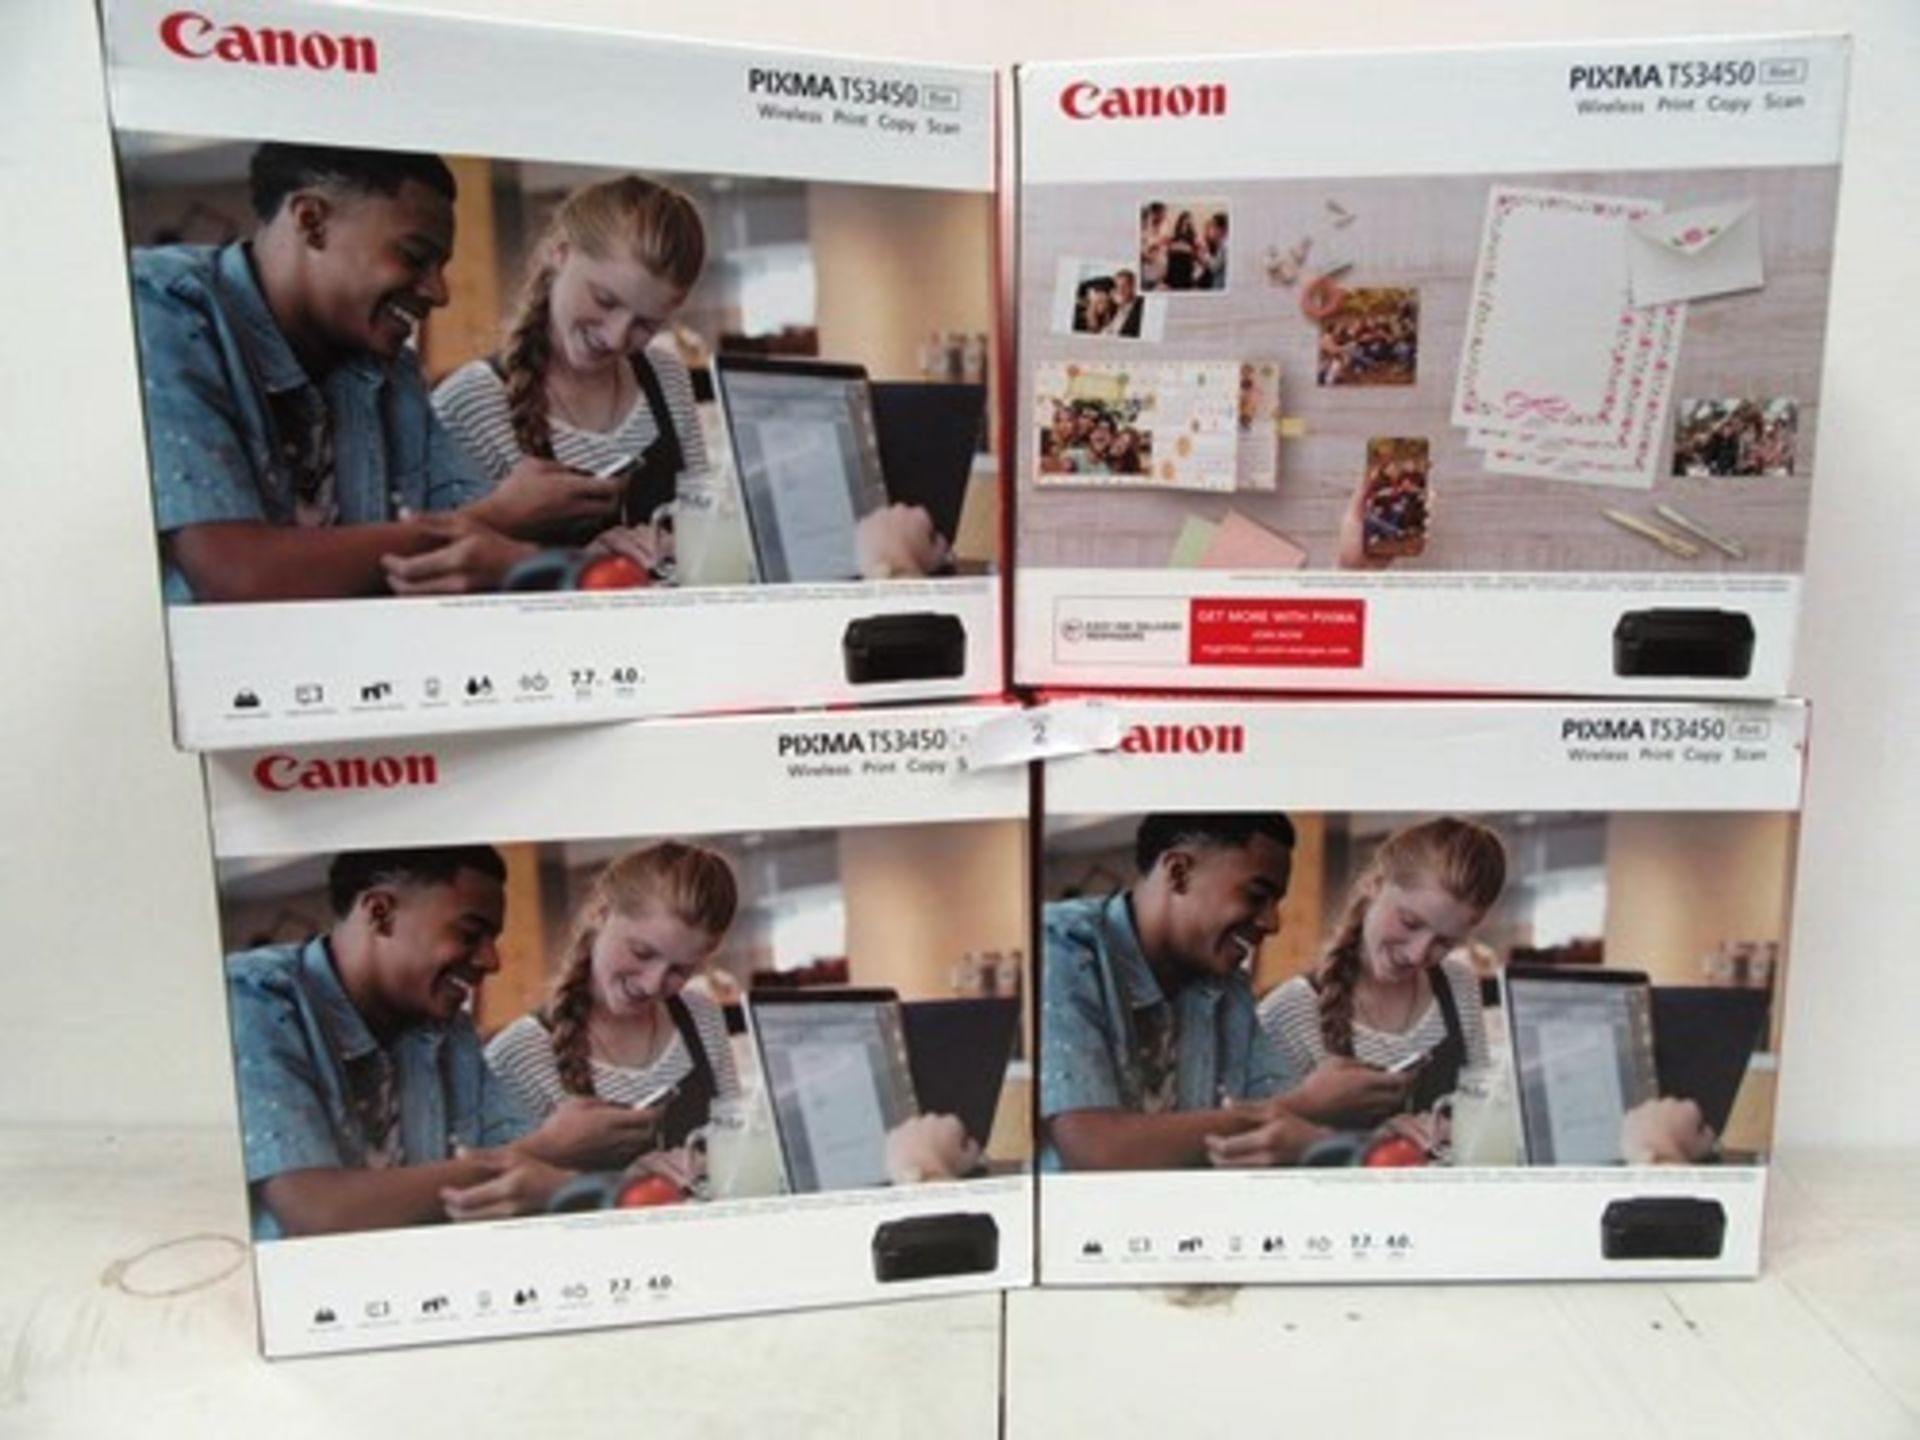 4 x Canon Pixma TS3450 printers - Sealed new in box (ES9)